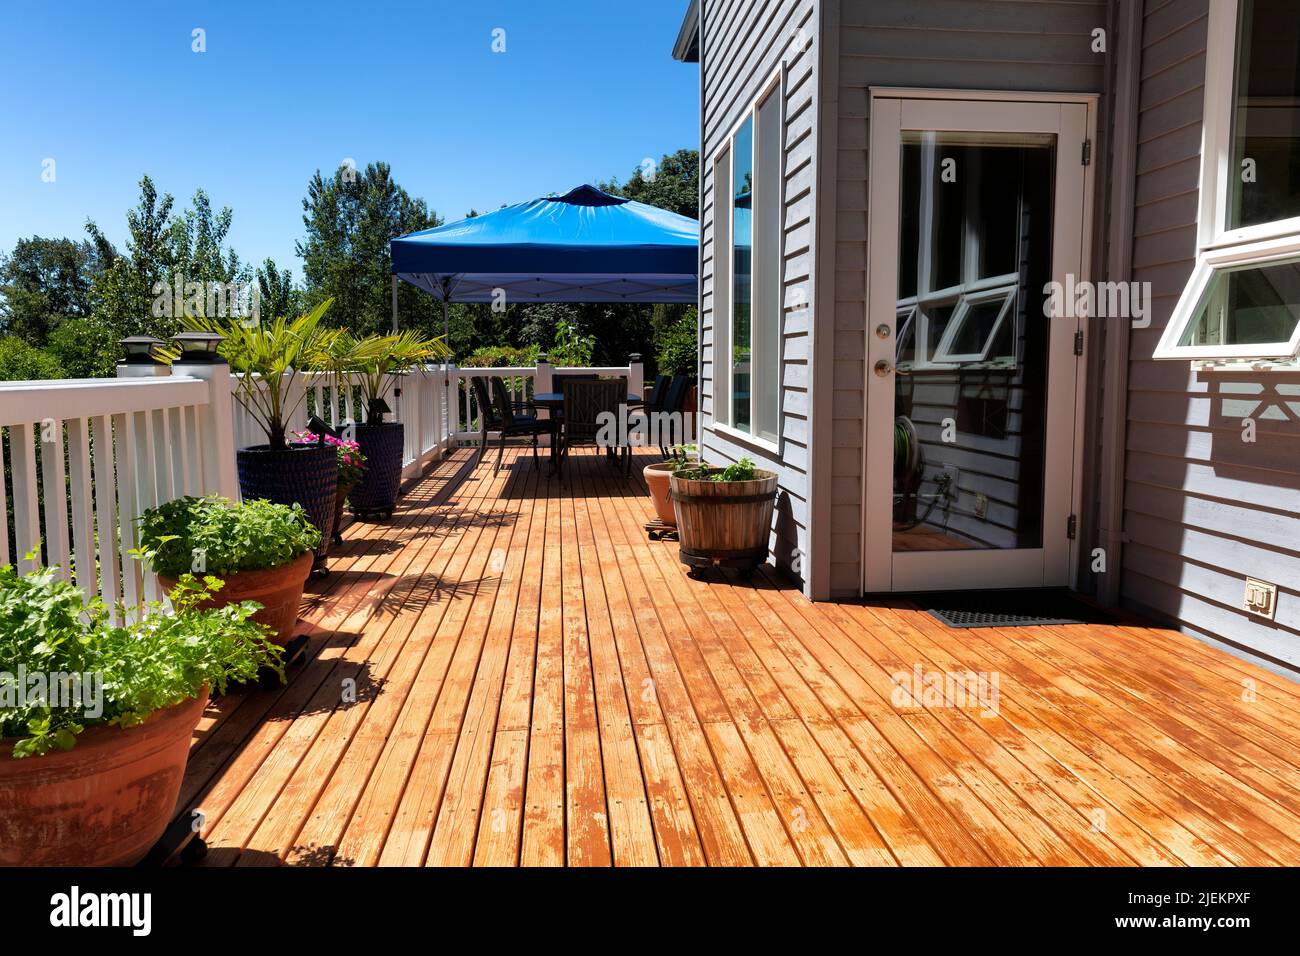 Casa con terraza de madera con muebles de exterior y jardín trasero durante el verano Foto de stock